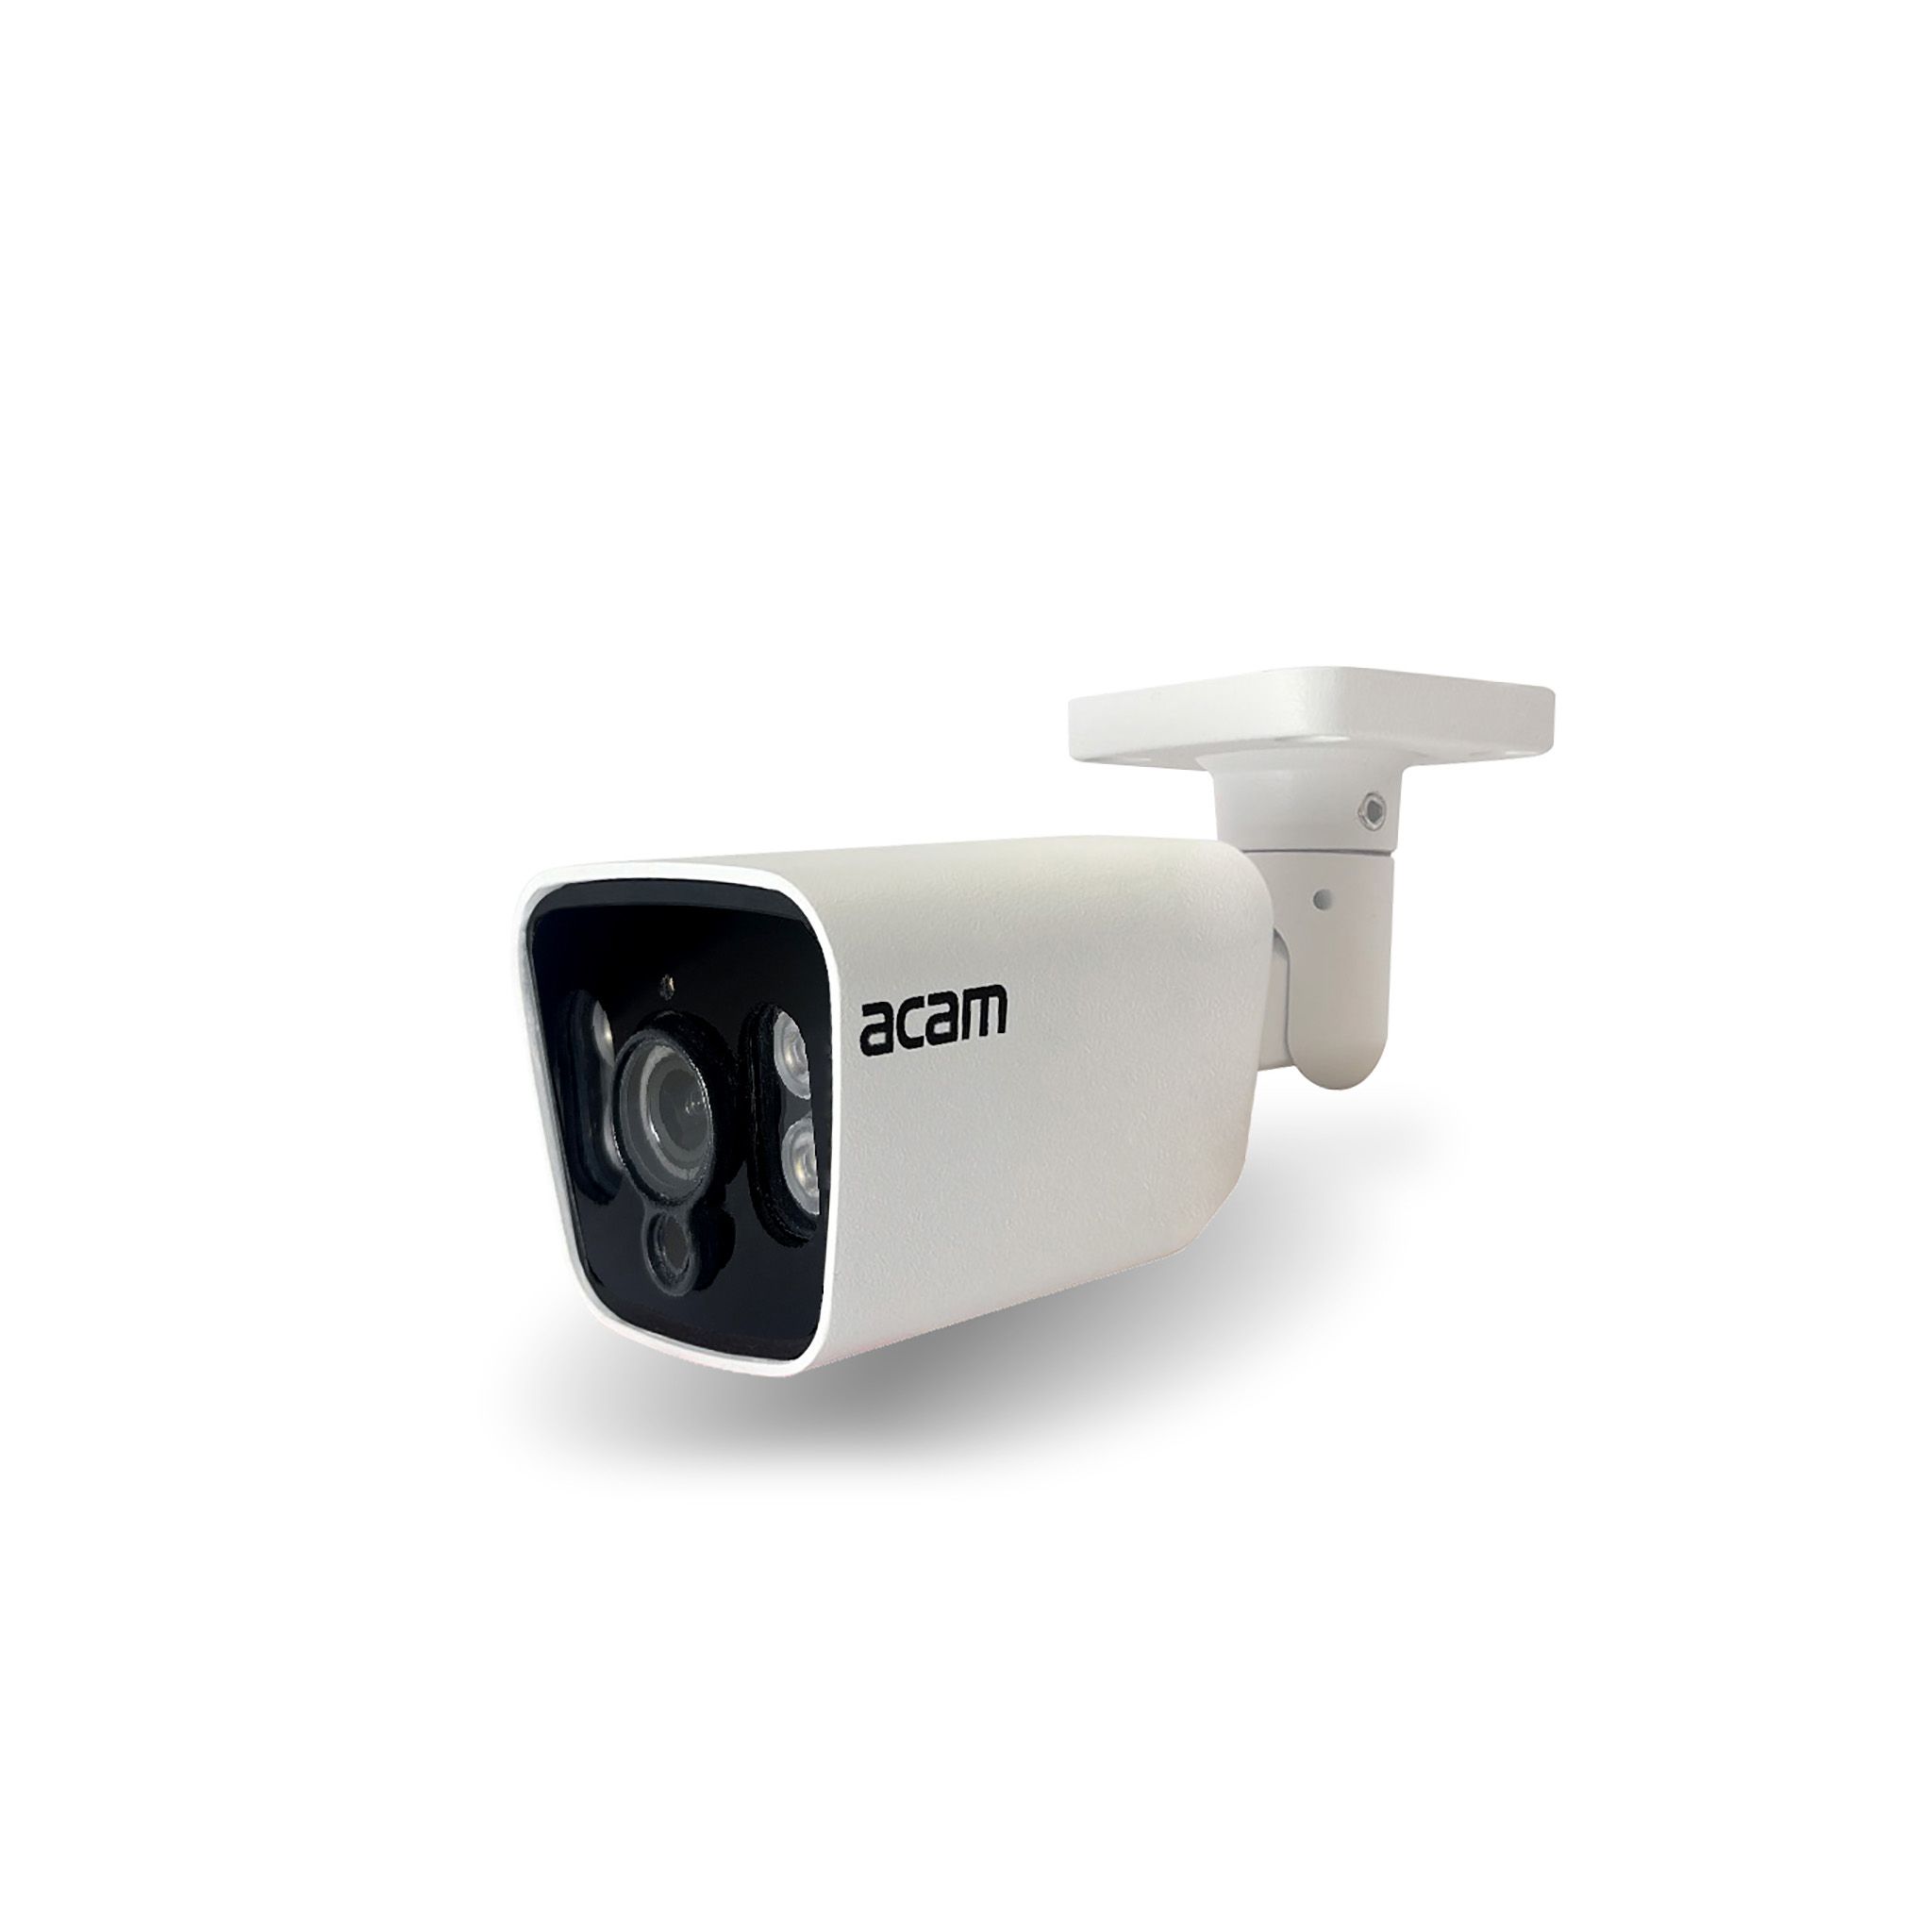 دوربین acam IC-LMD20F